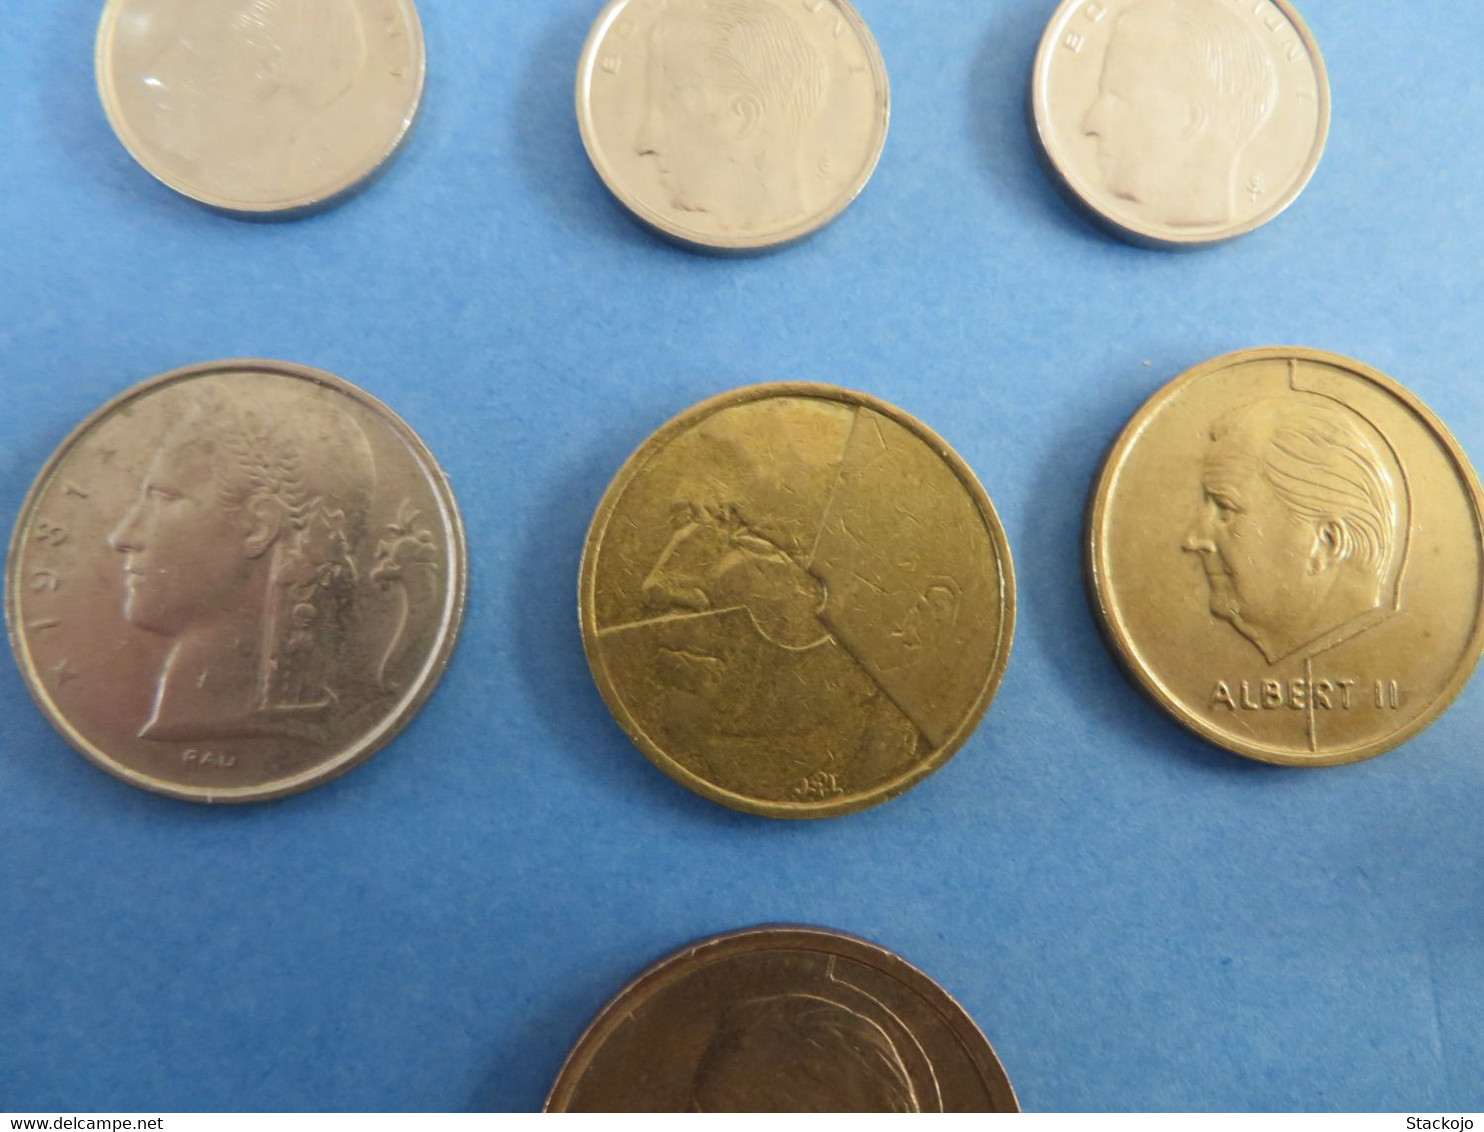 Pièces de monnaie Belge